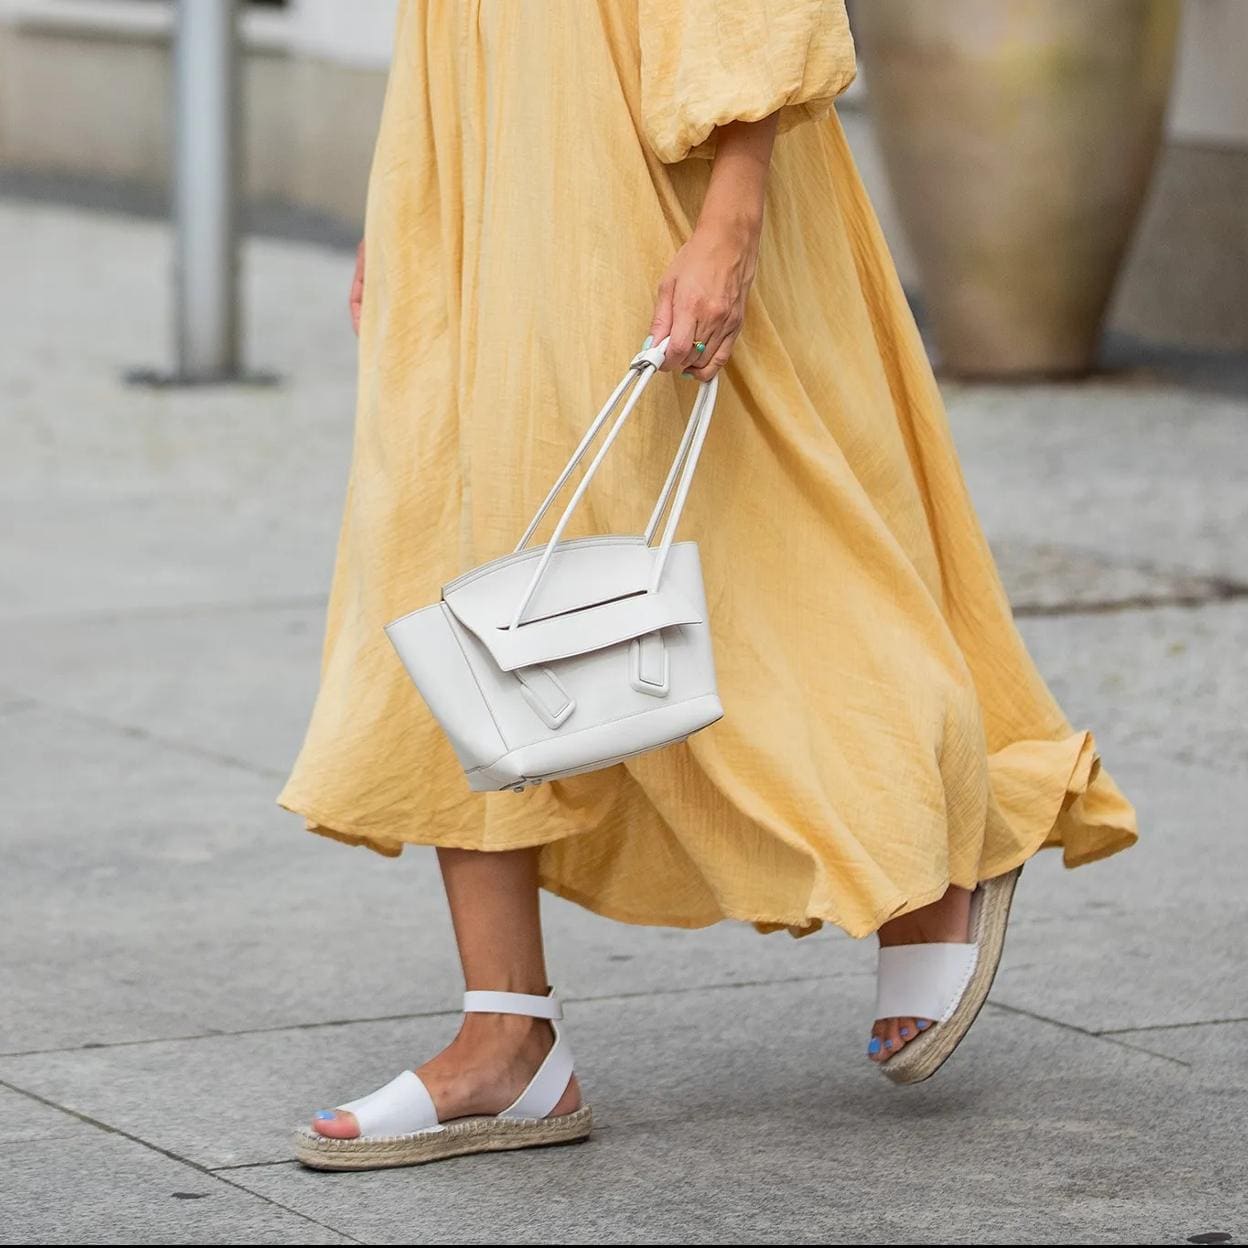 Estas alpargatas de Zara Kids ser el calzado más cómodo verano Mujer Hoy